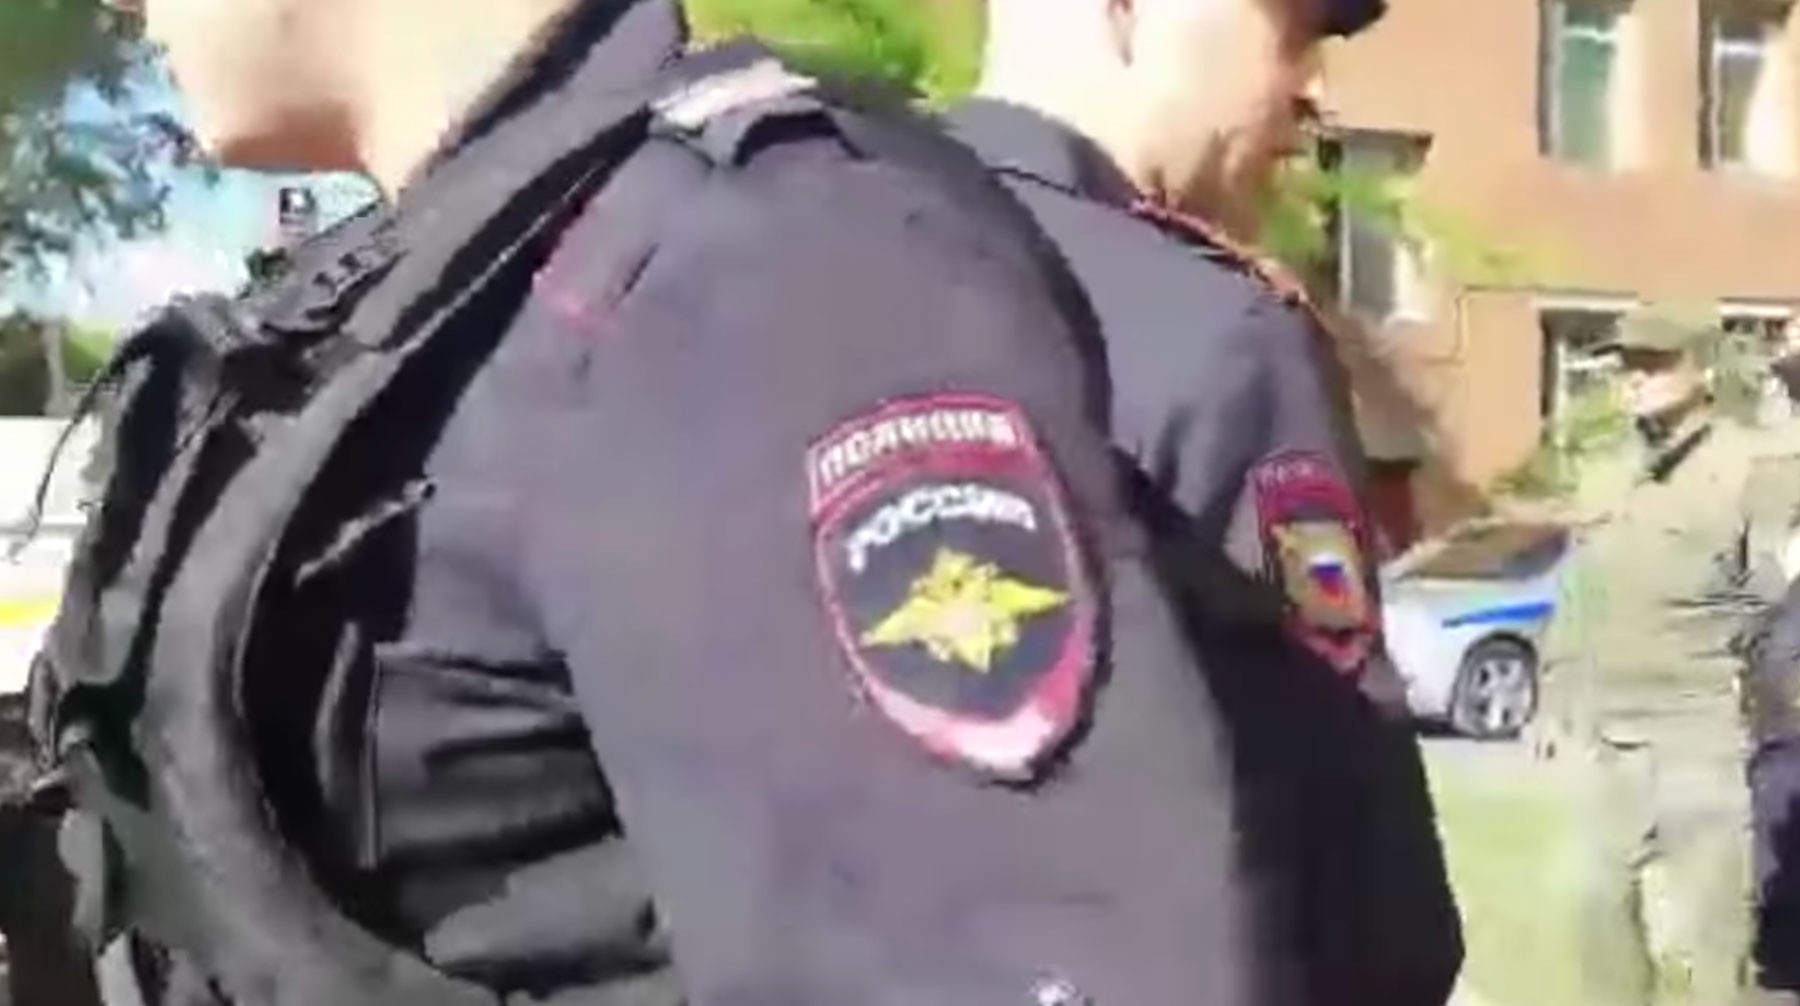 Dailystorm - Полиция разогнала участников акции против застройки сквера на западе Москвы